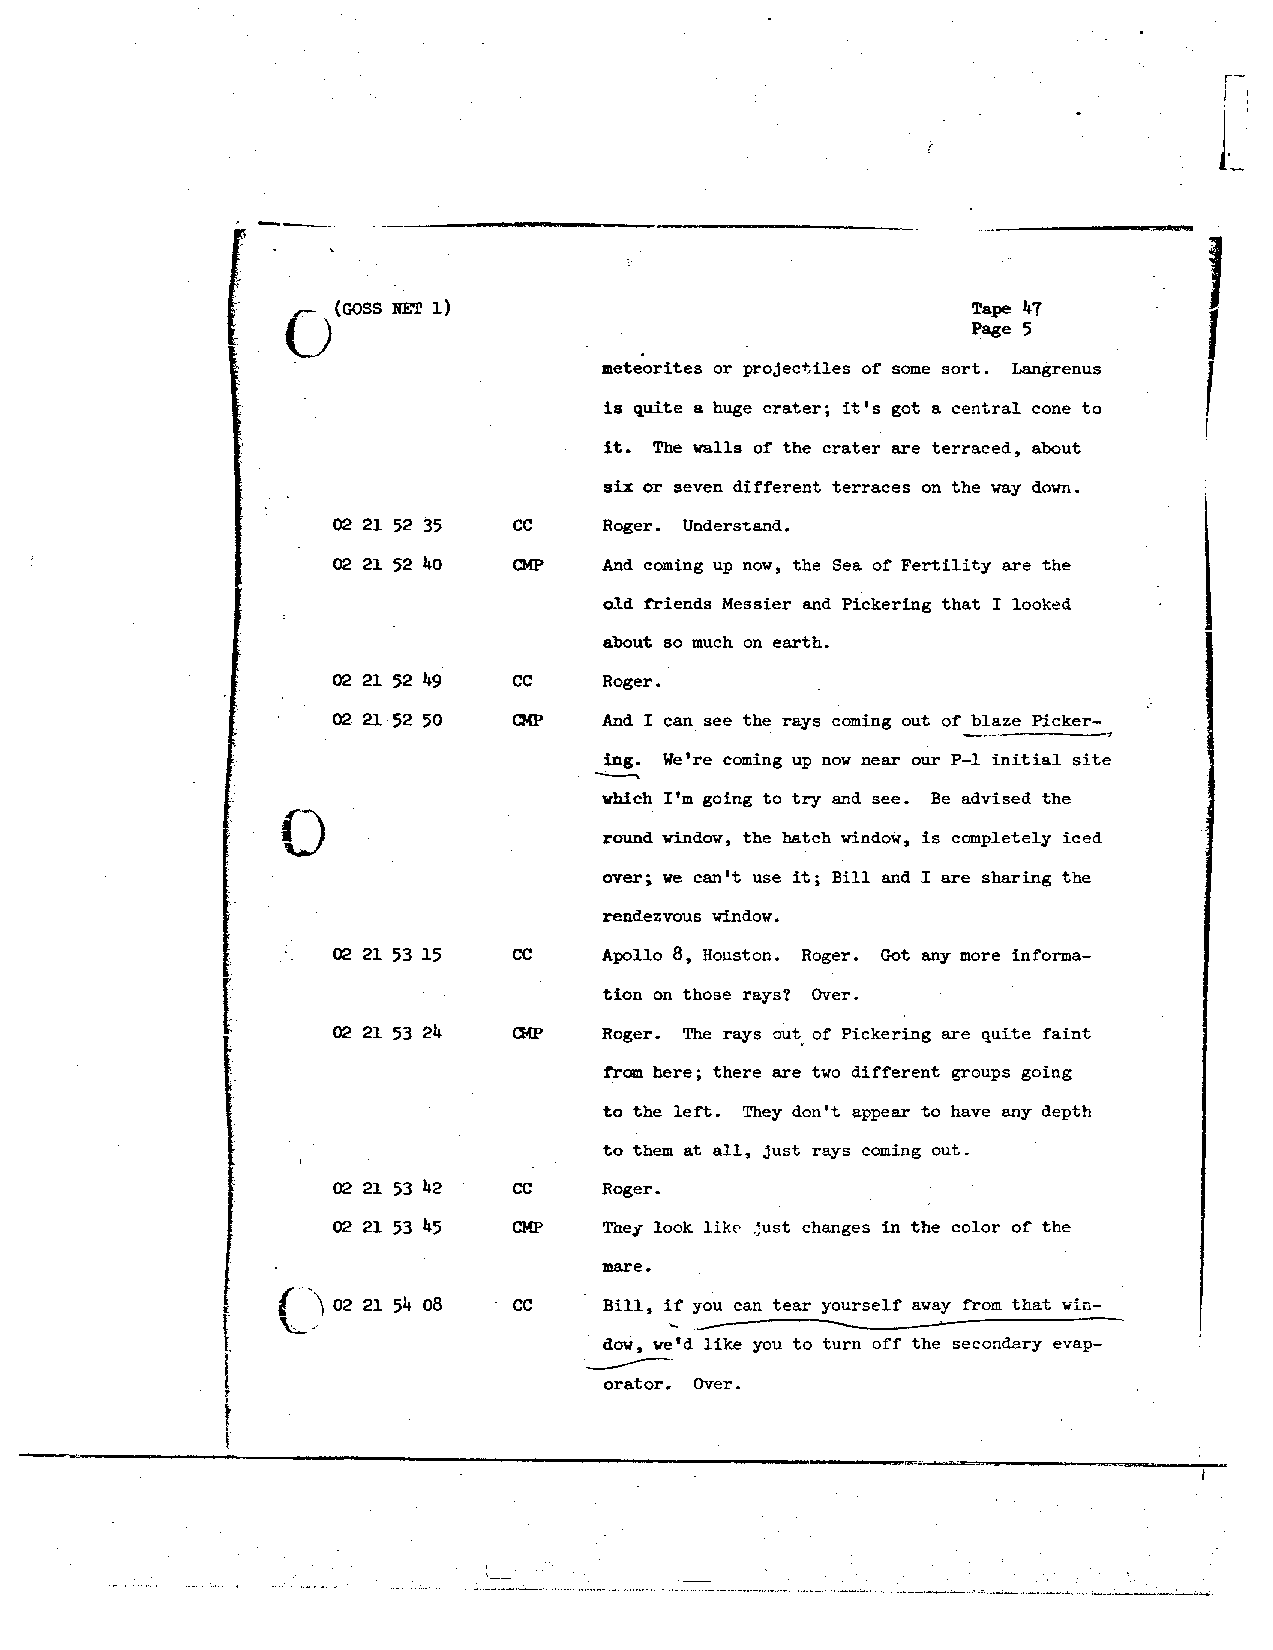 Page 362 of Apollo 8’s original transcript